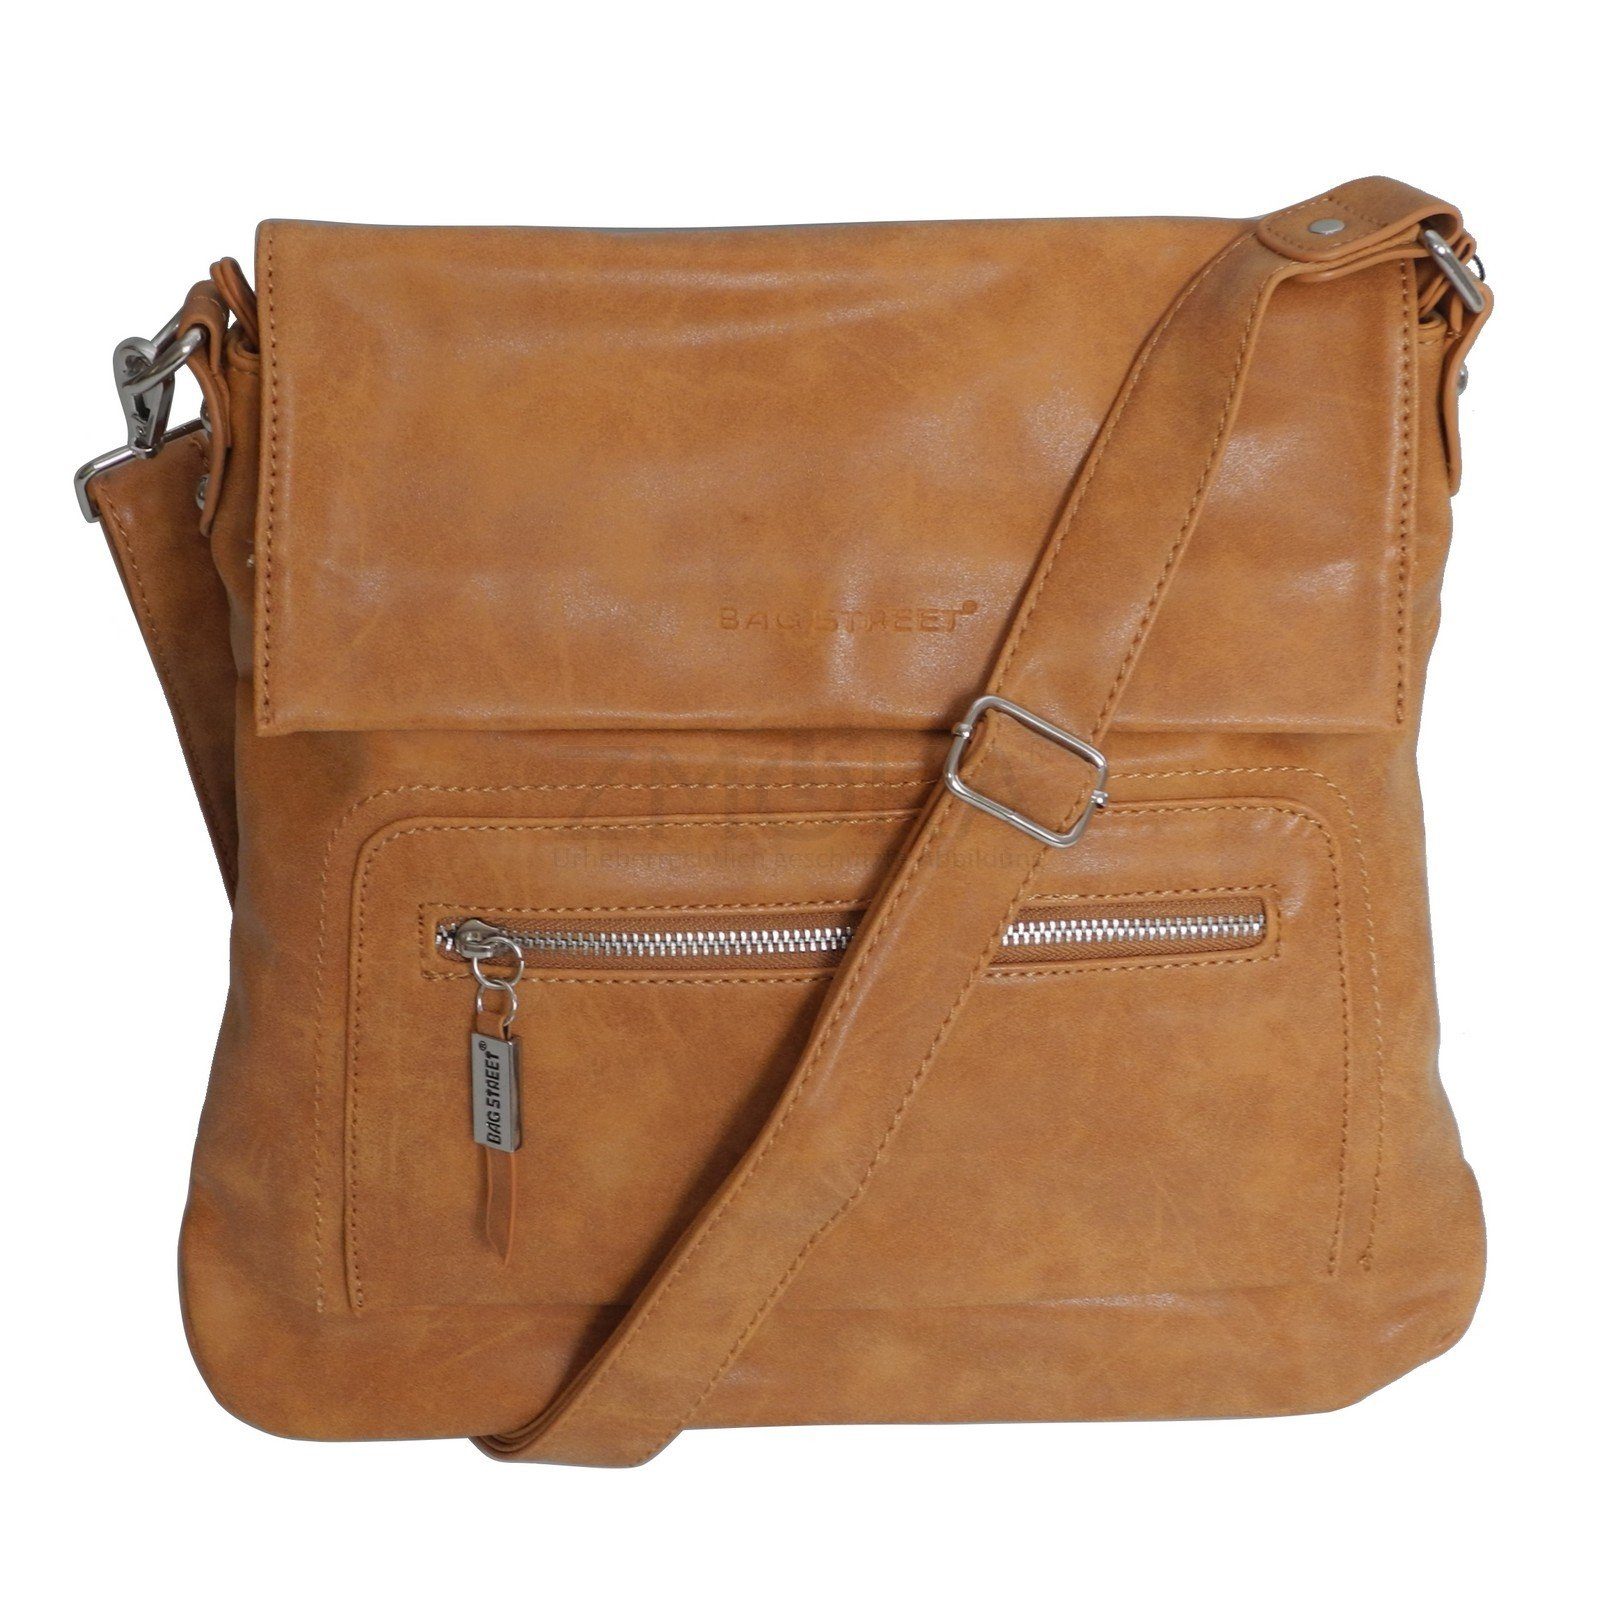 BAG STREET Handtasche Bag Street - Damen Messengerbag Damentasche Umhängetasche Auswahl Cognac